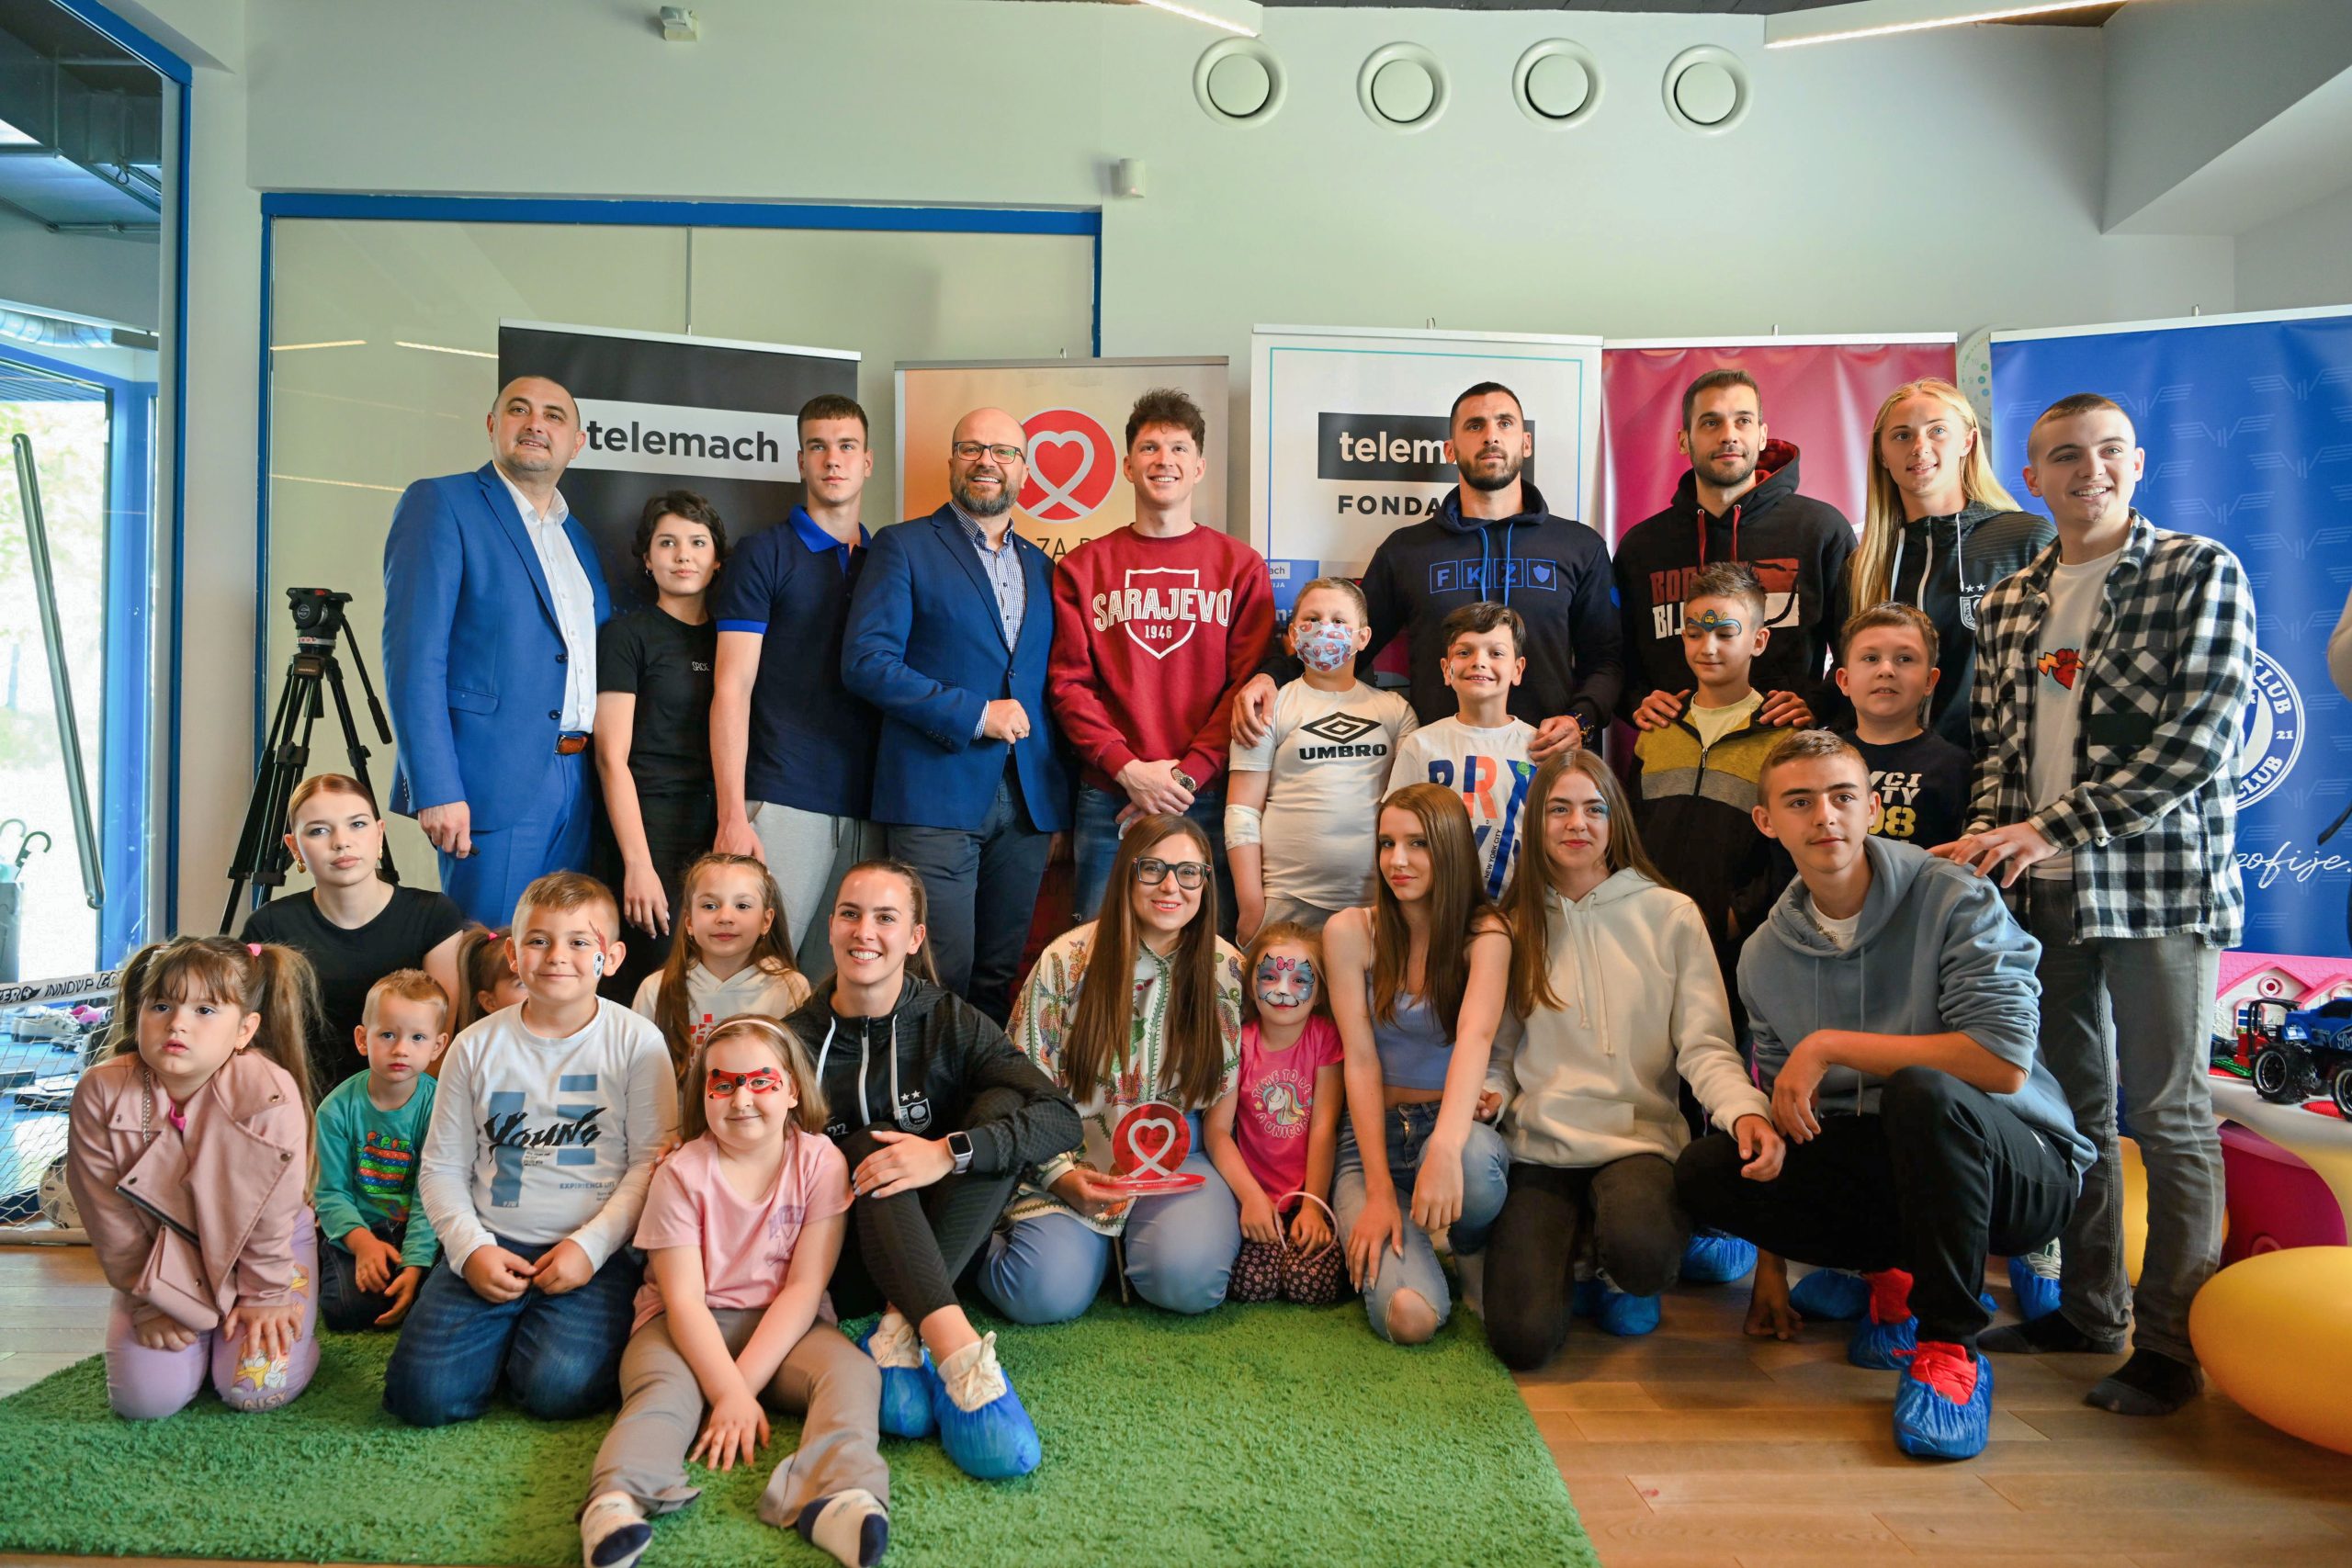 Telemach obnovio ugovor sa Srcem za djecu oboljelu od raka i ujedinio gradske fudbalske rivale u humanoj misiji